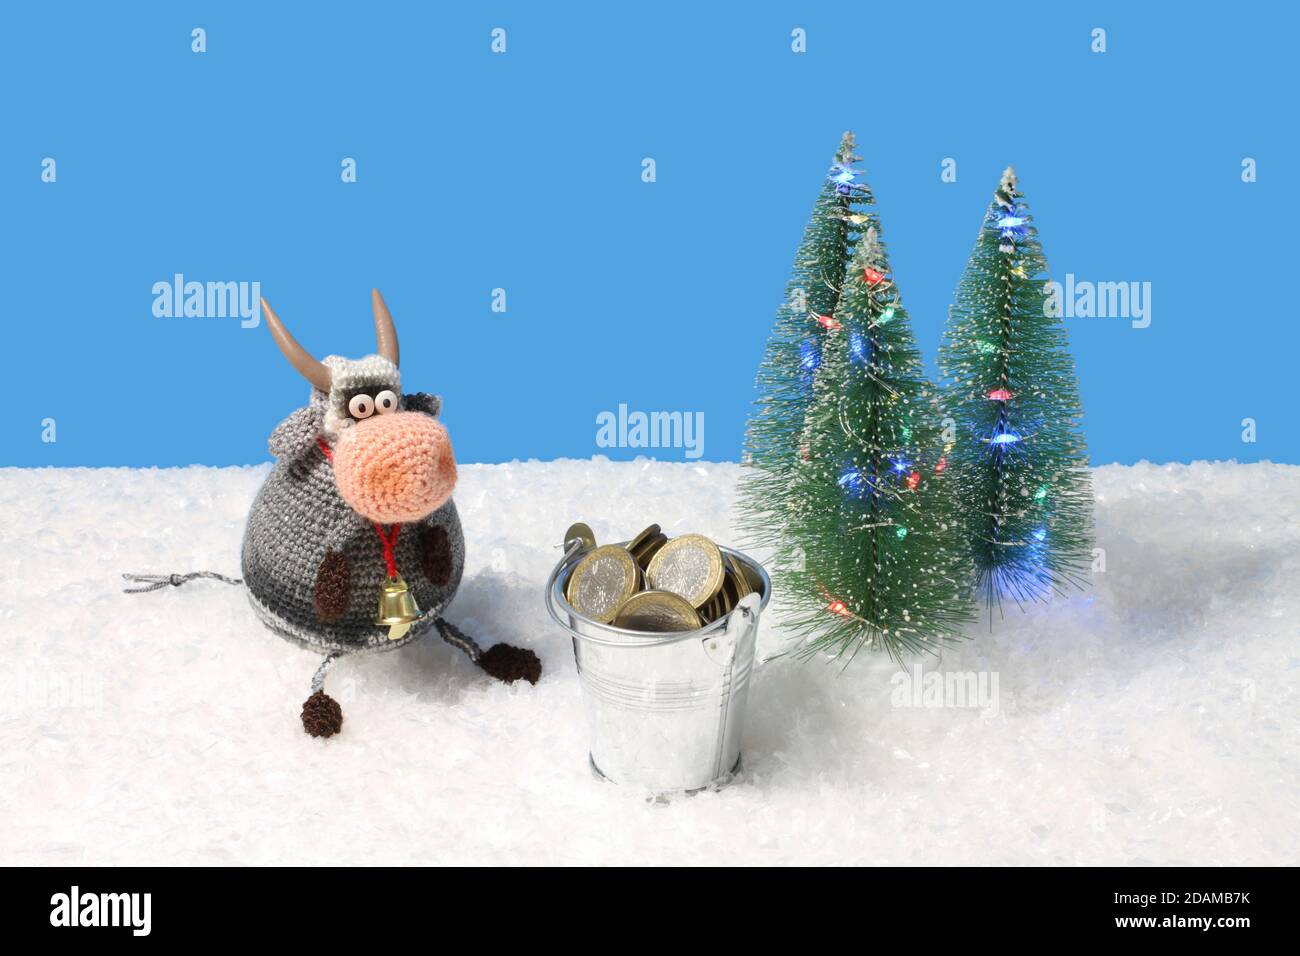 El juguete de lana de punto toro sentado junto al juguete Árboles de  Navidad verdes con luces y cubo de juguete con monedas sobre nieve blanca  artificial contra azur ba Fotografía de